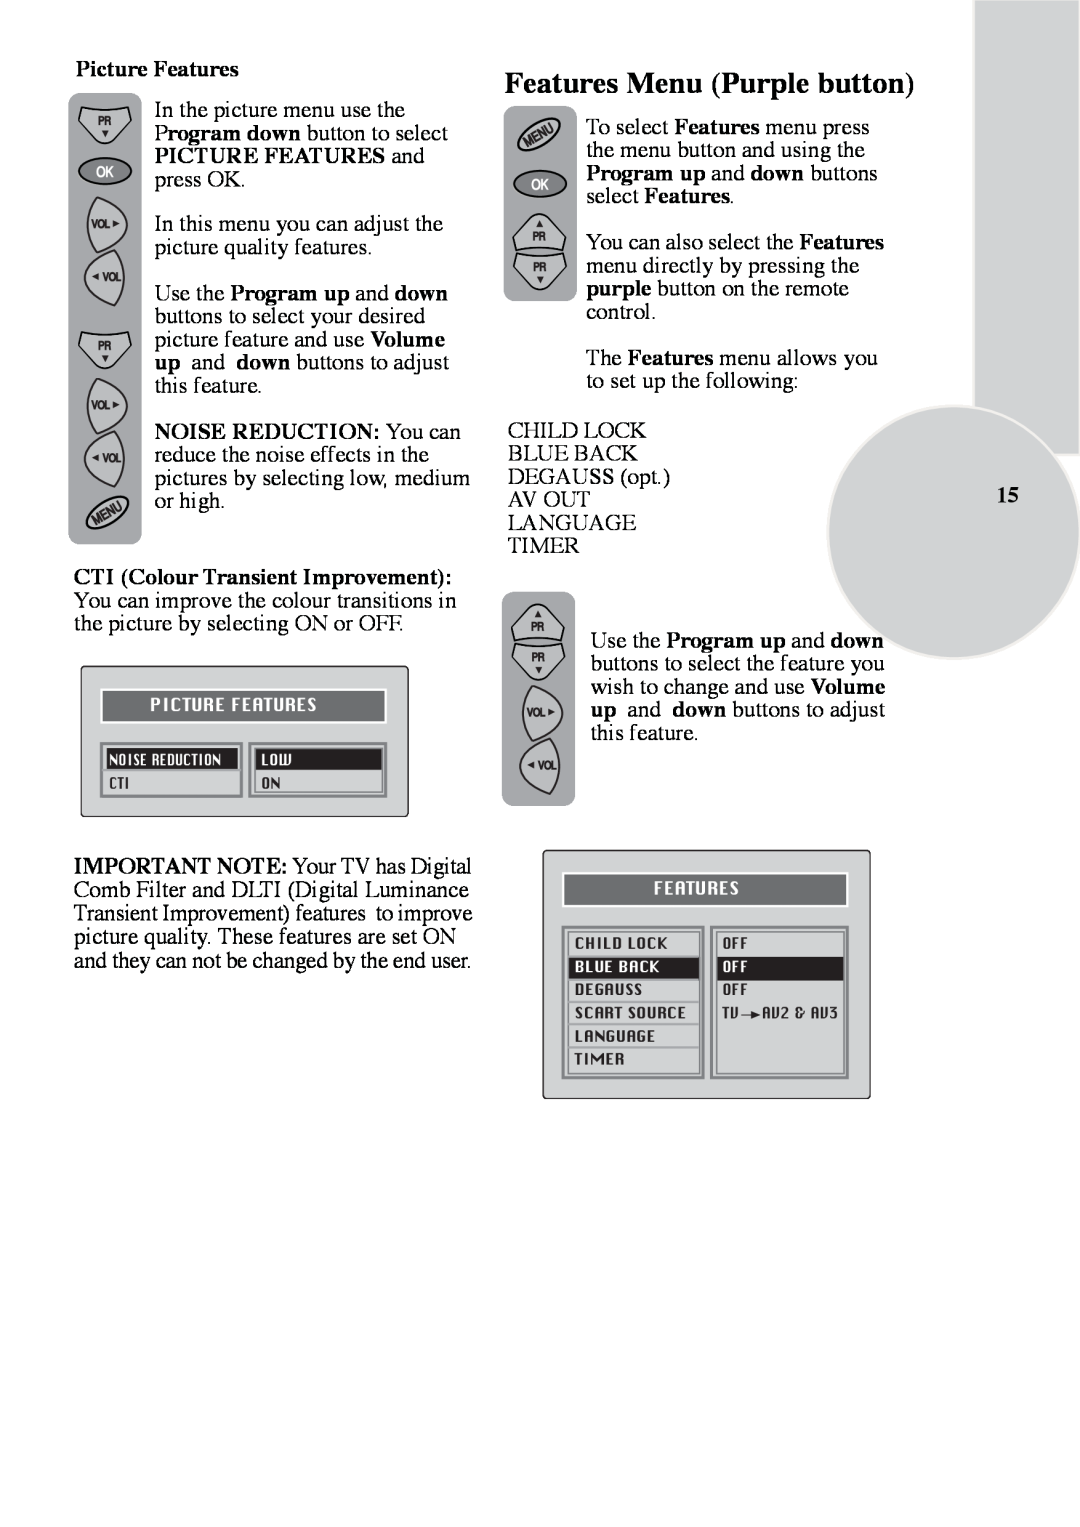 ITT 29-100-1 ST manual Features Menu Purple button, Picture Features 